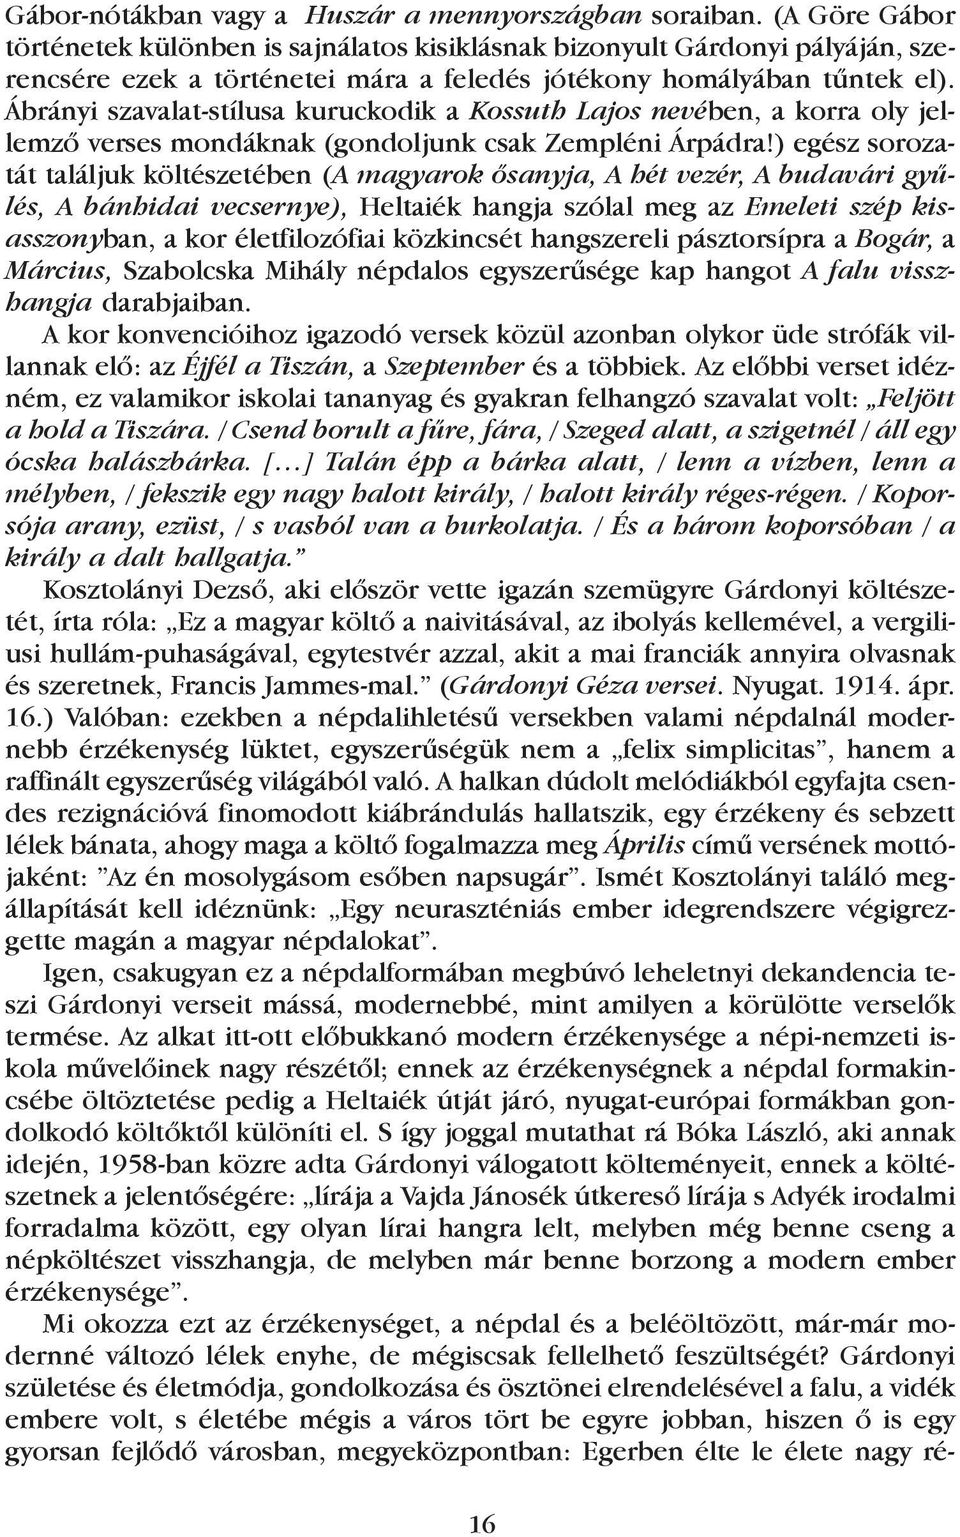 Ábrányi szavalat-stílusa kuruckodik a Kossuth Lajos nevében, a korra oly jellemzõ verses mondáknak (gondoljunk csak Zempléni Árpádra!